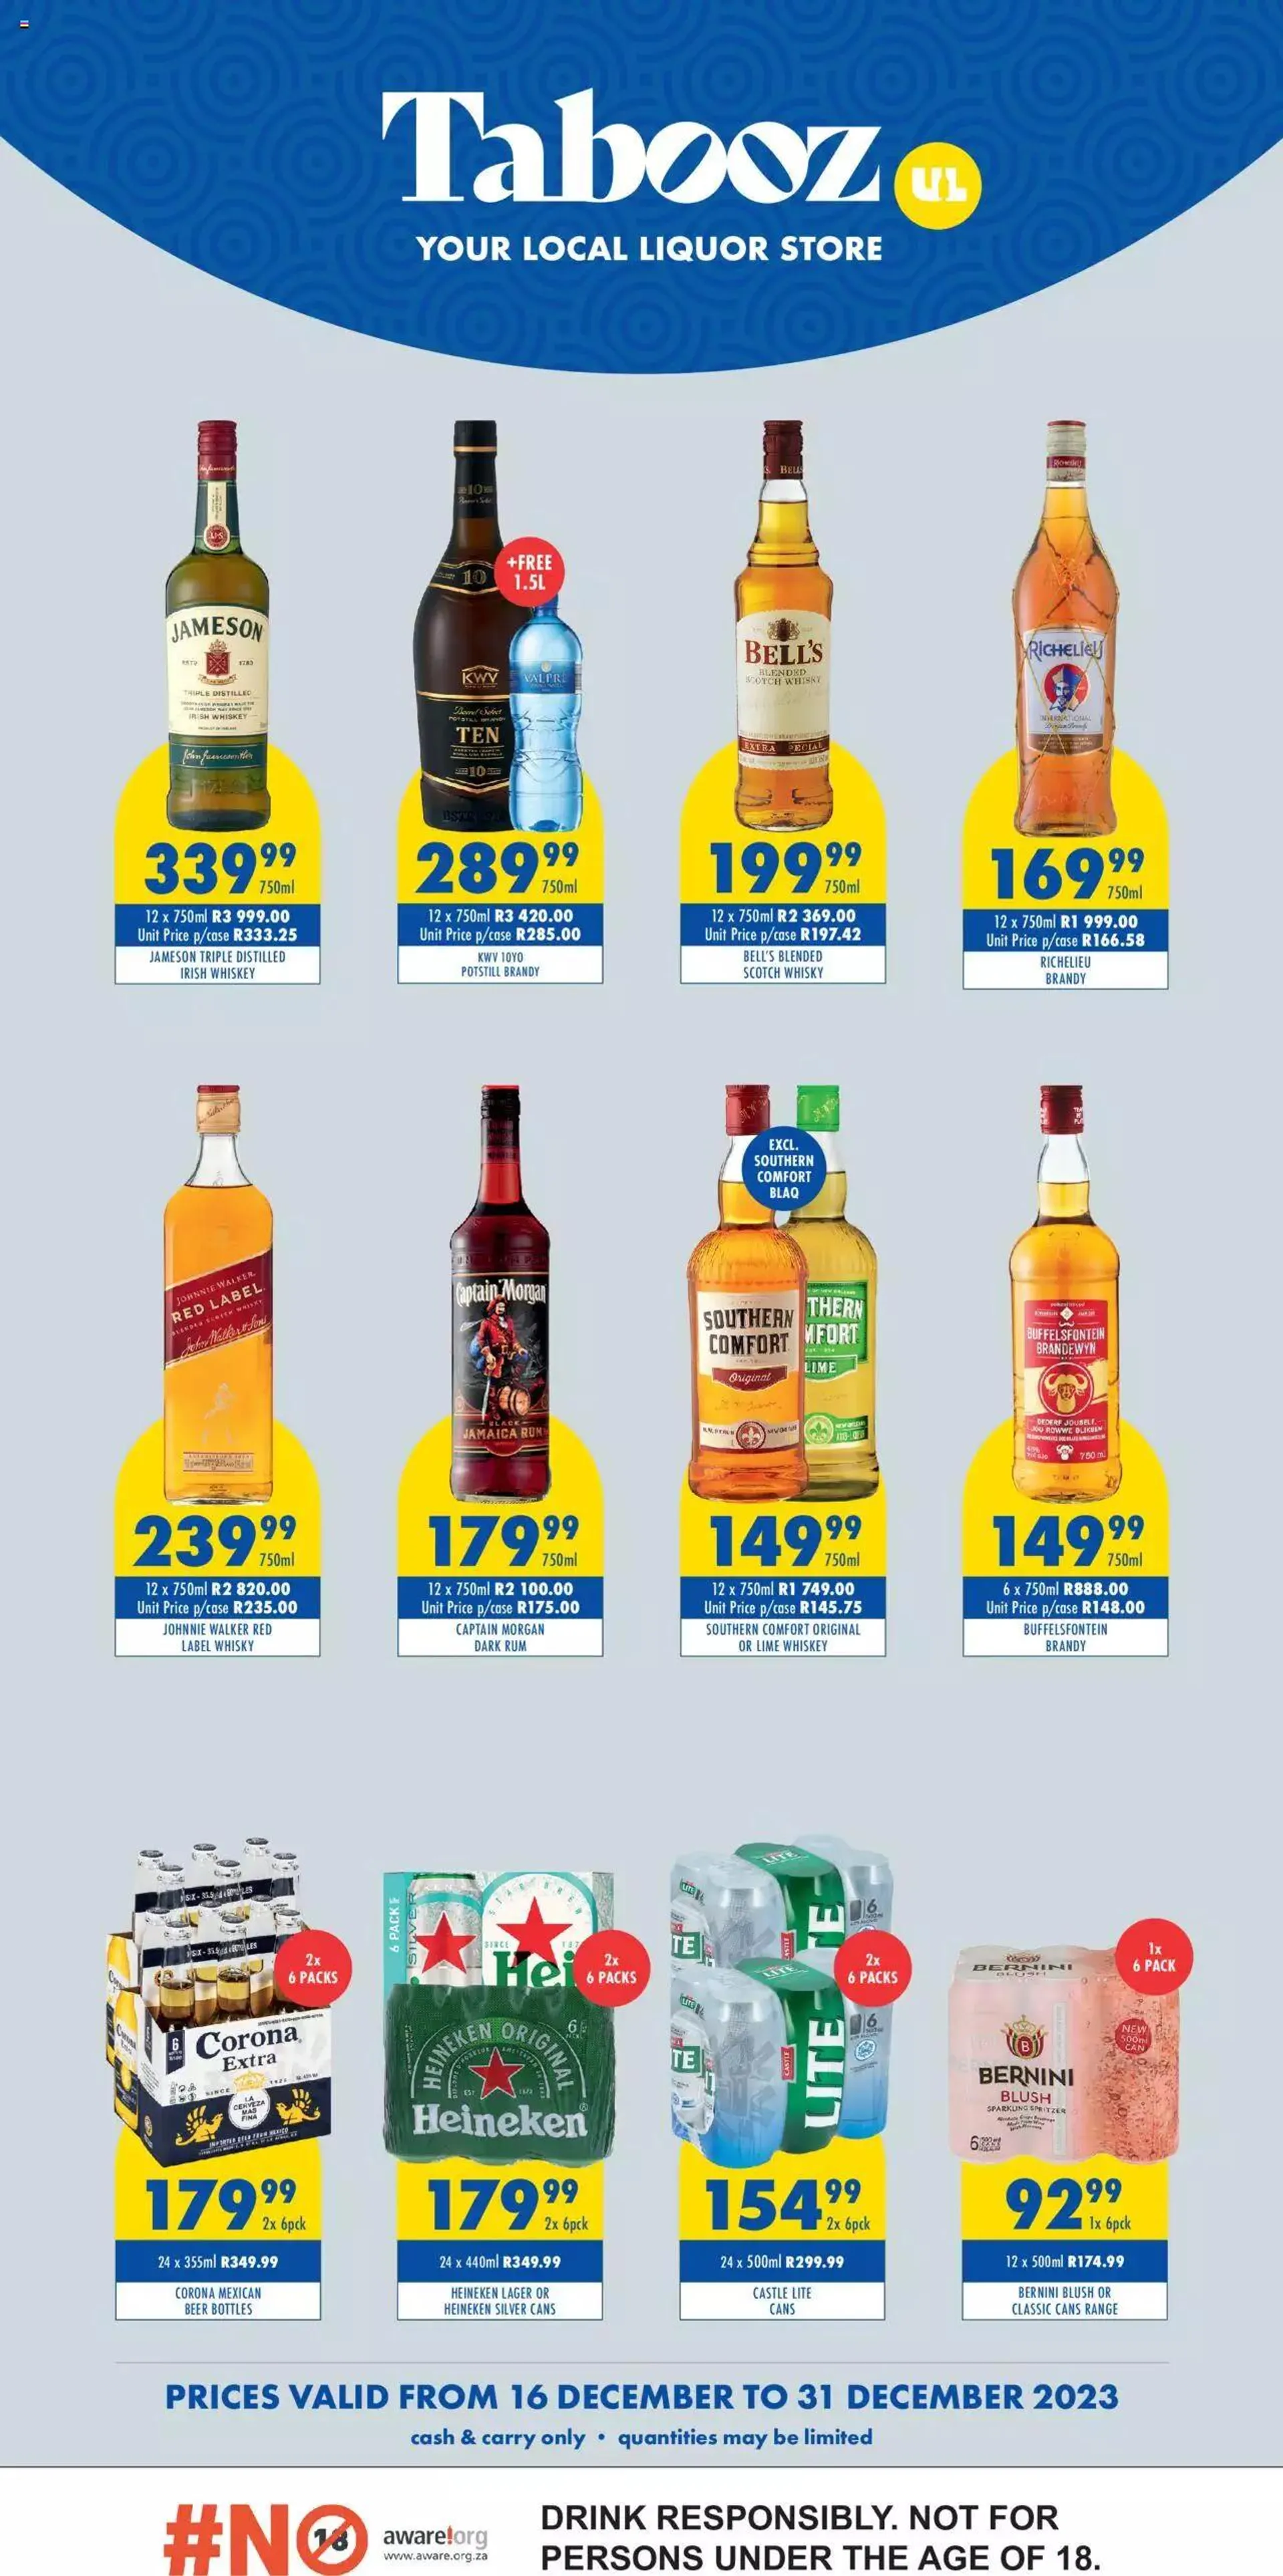 Ultra Liquors - Tabooz Specials - 16 December 31 December 2023 - Page 1